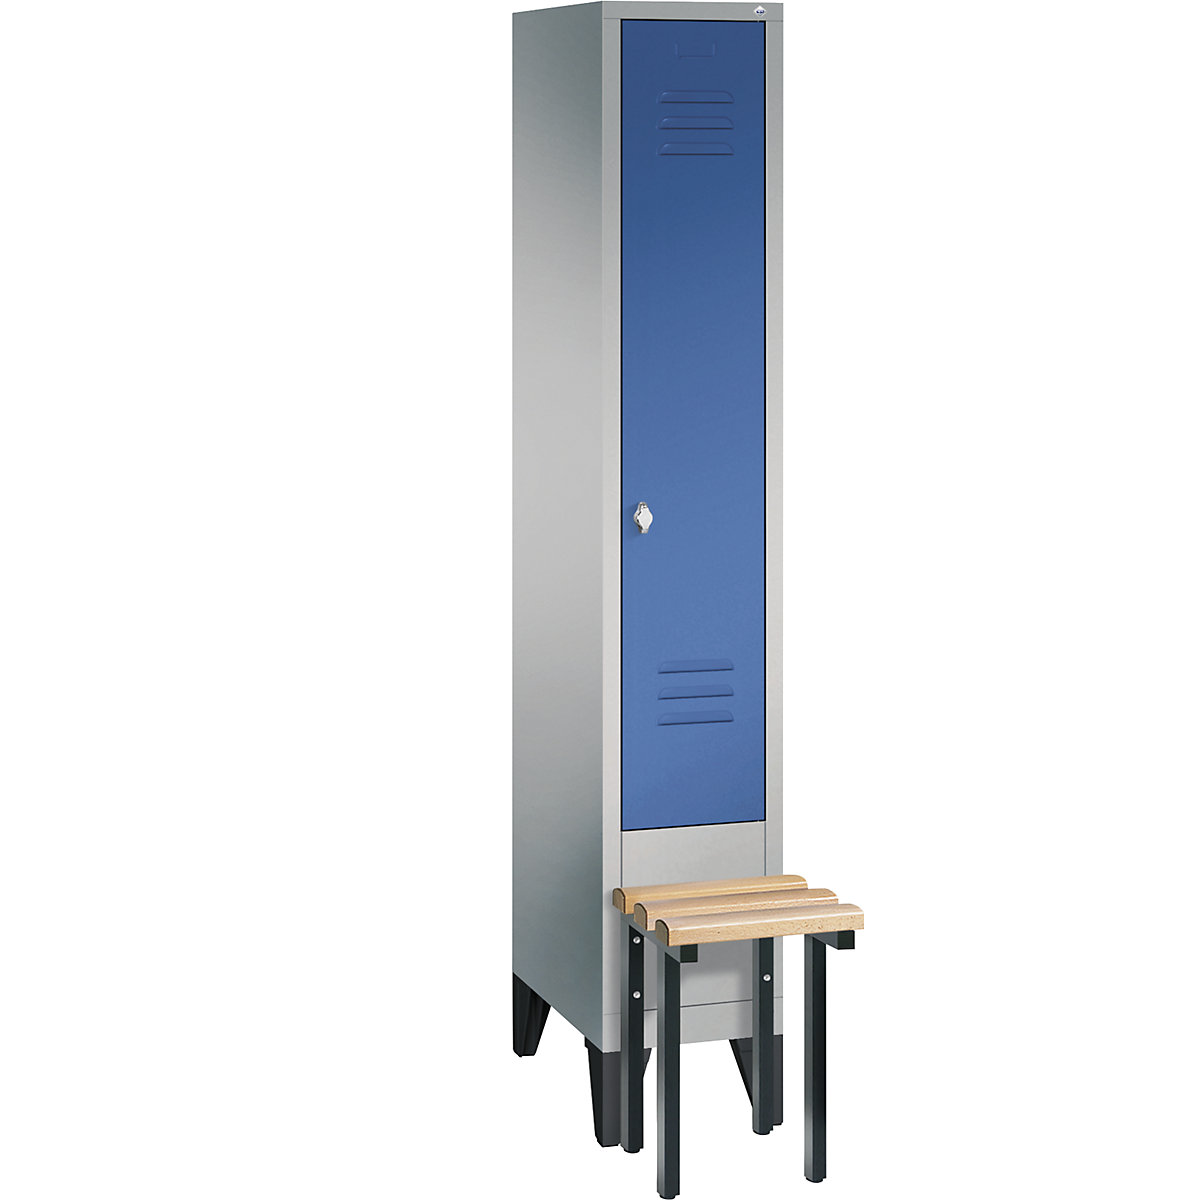 Garderobna omara CLASSIC s klopjo – C+P, 1 predelek, širina 300 mm/predelek, aluminijasto bele / encijan modre barve-12